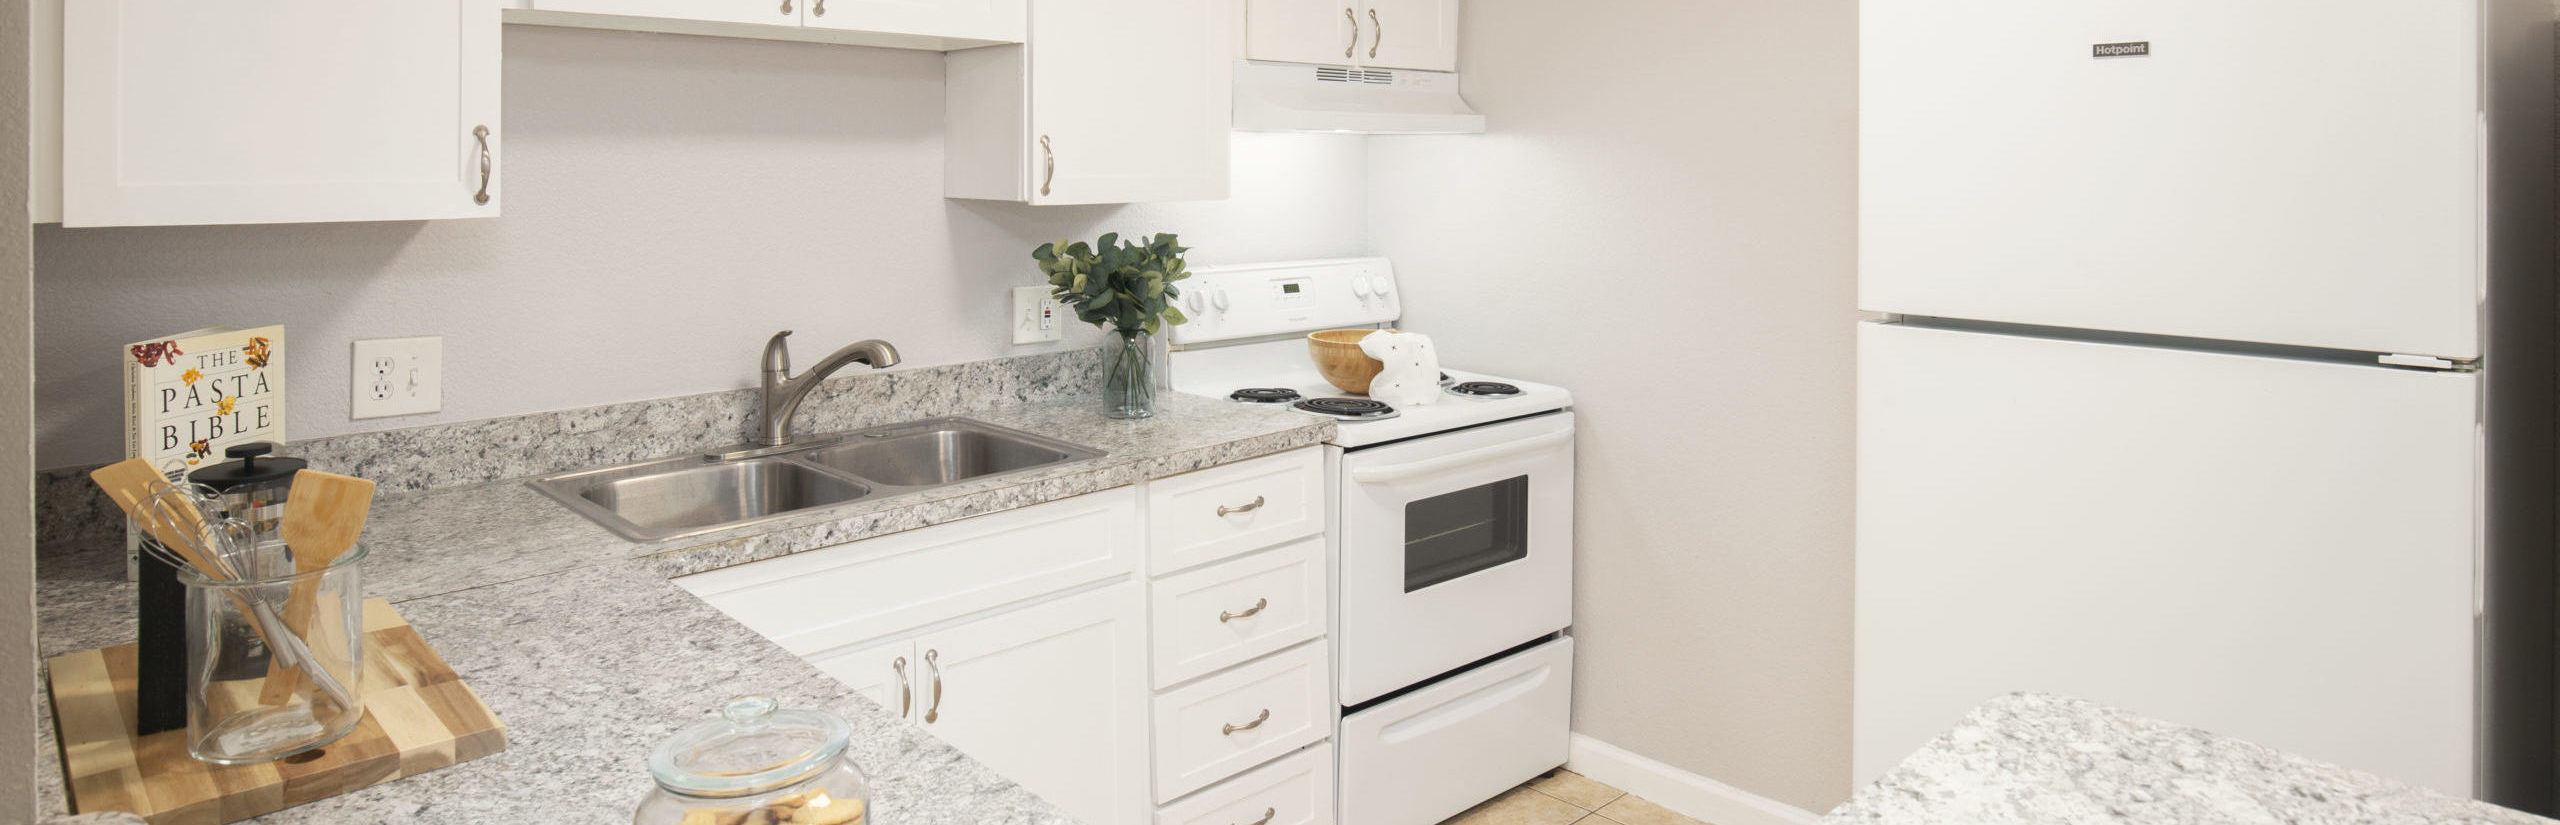 apartment unit kitchen granite